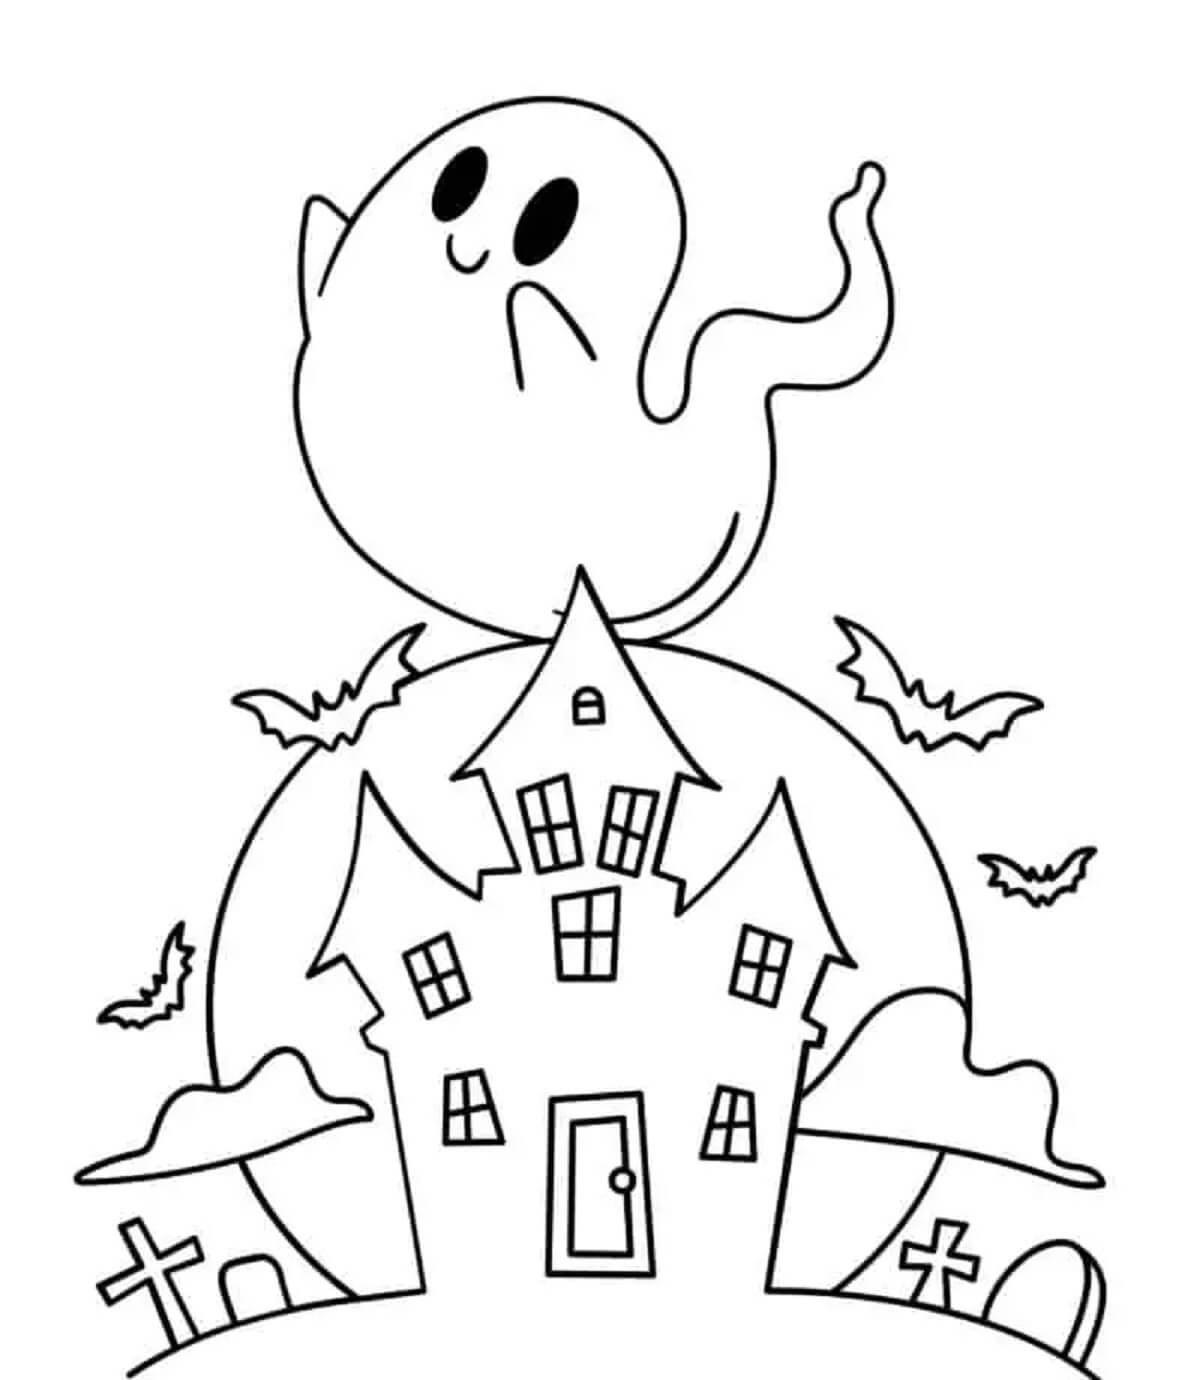 유령의 집과 웃는 유령 coloring page